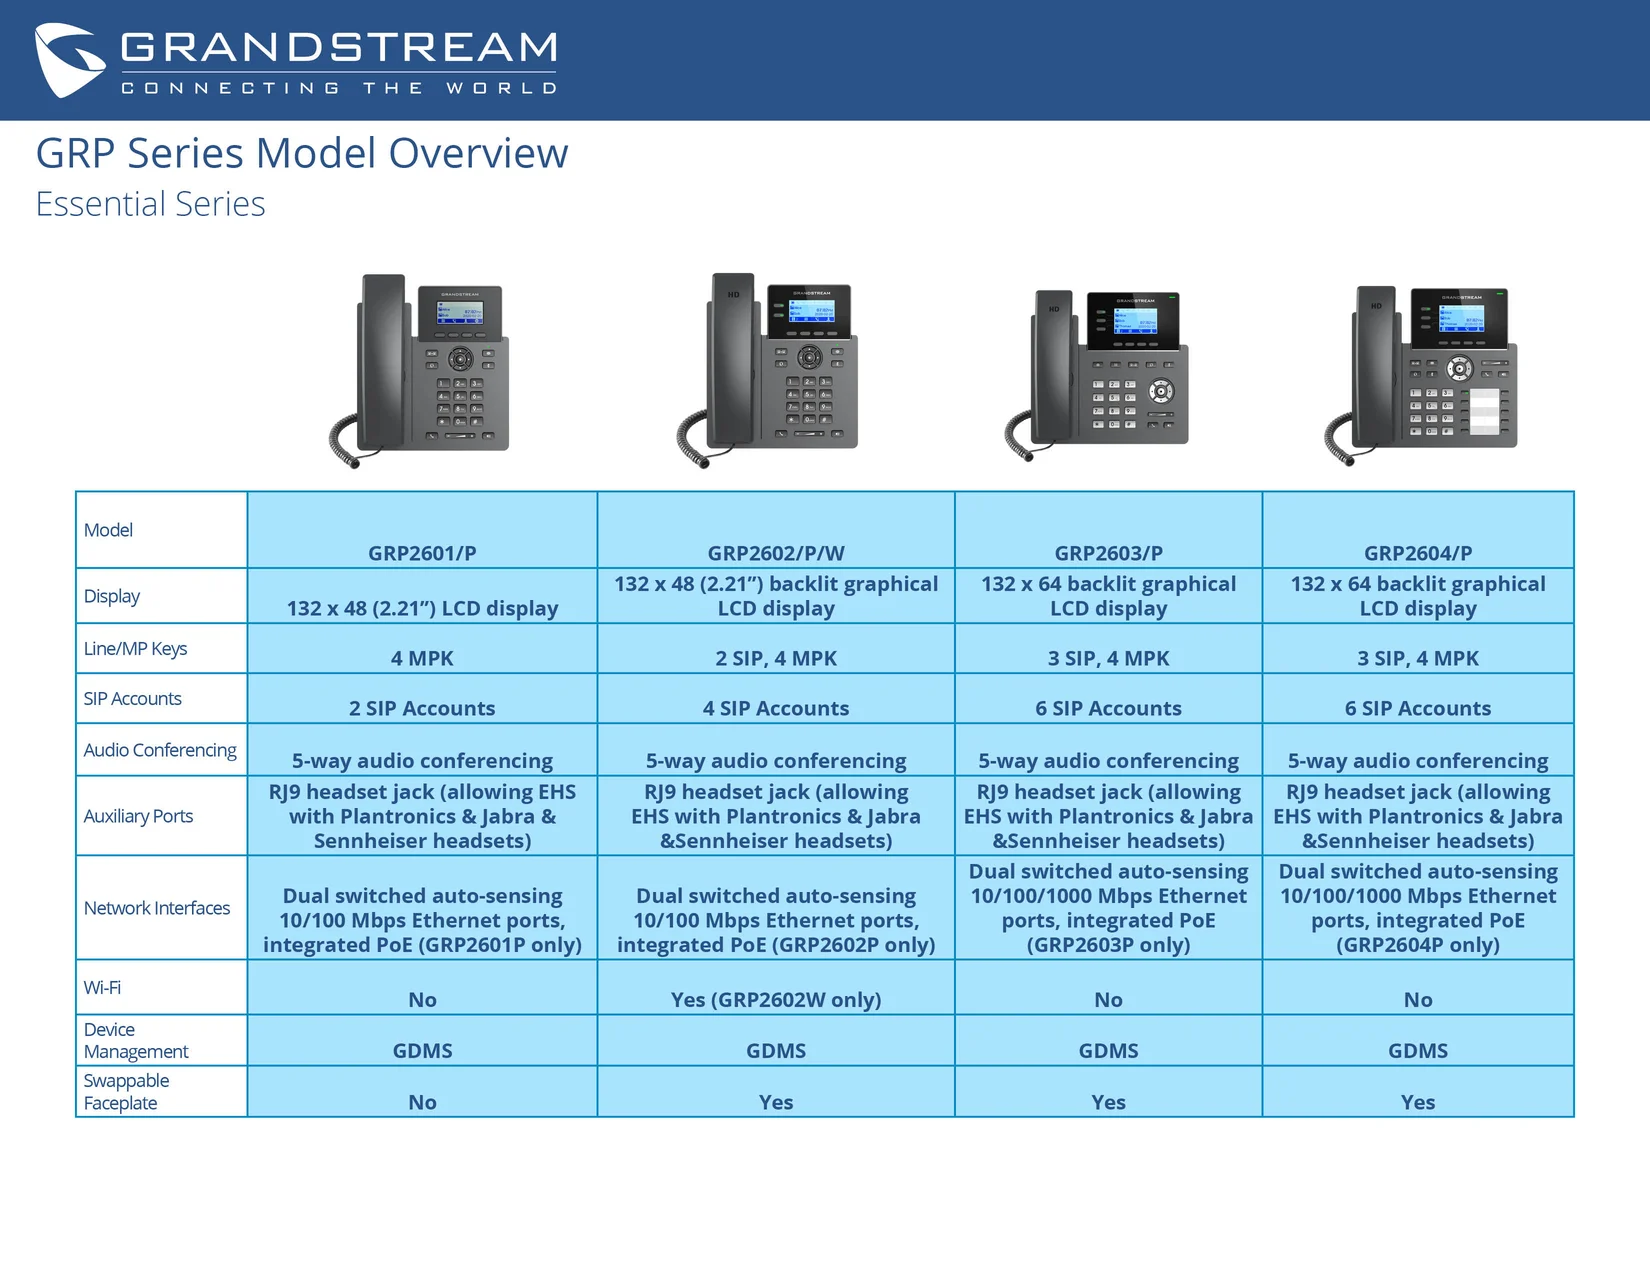 GRP Series Grandstream Cuadro Comparativo Essential Comparison GRP260x CASTelecom